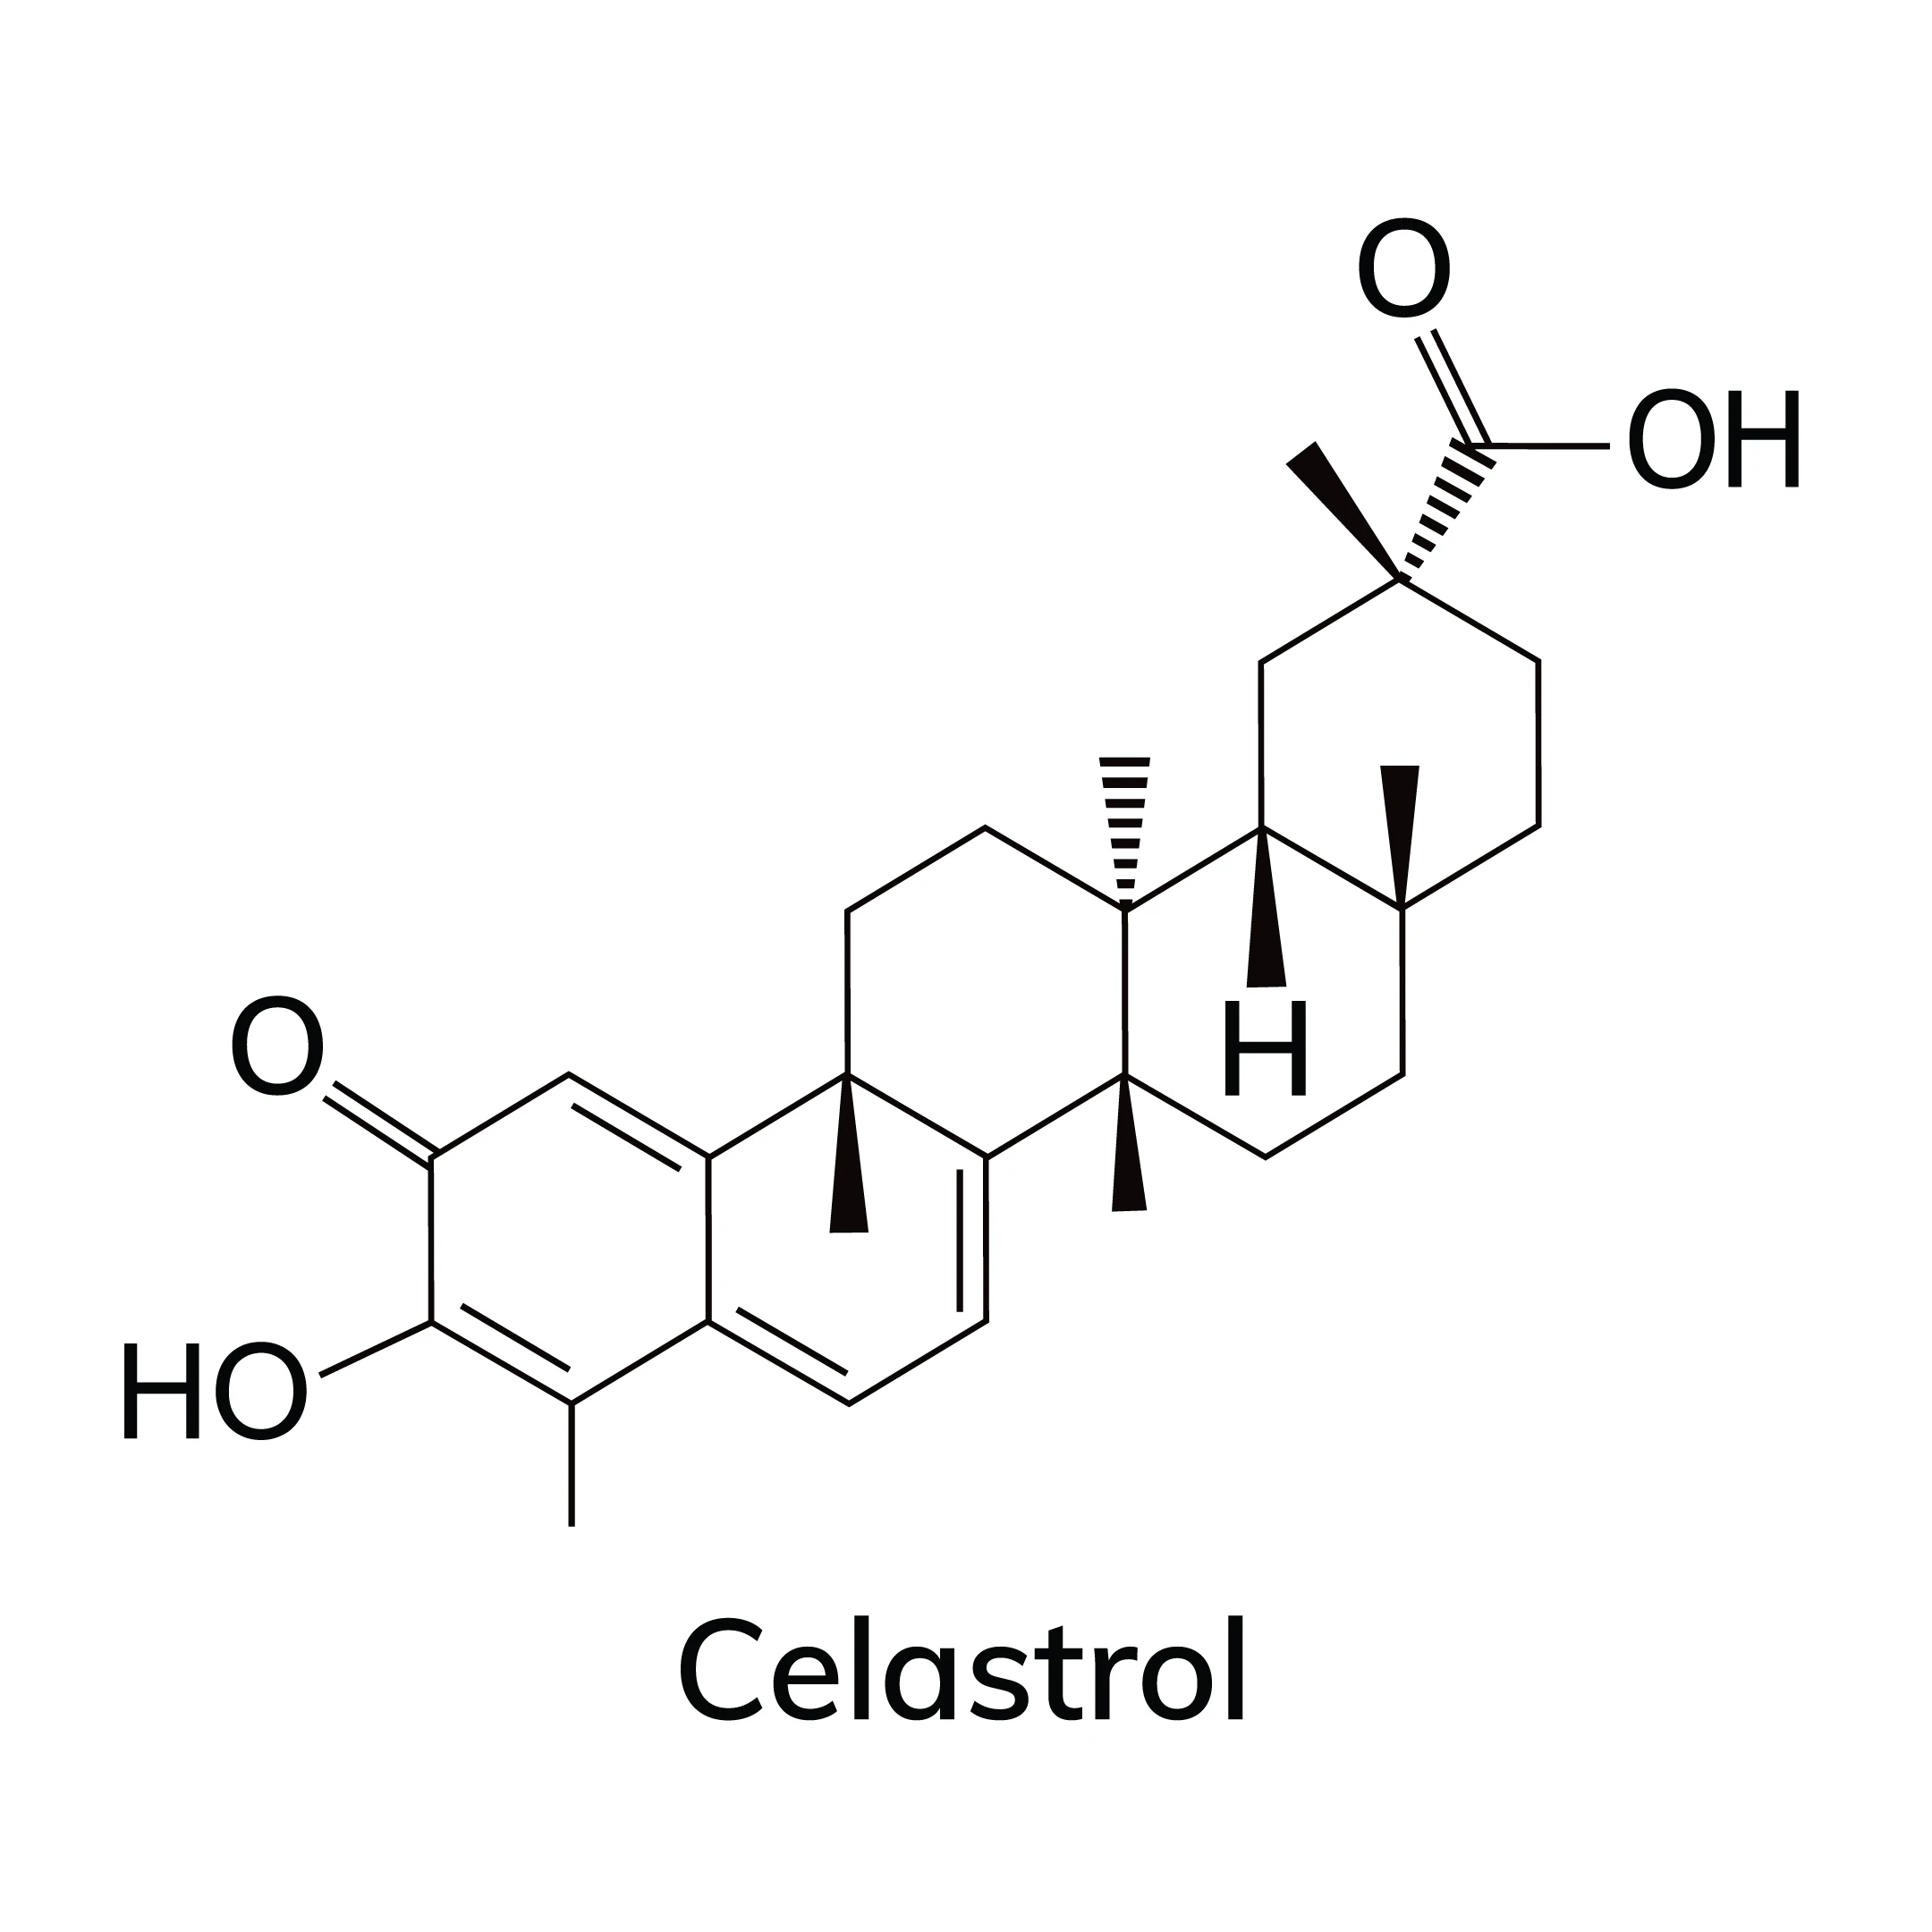 Celastrol molecular structure and skeletal chemical formula